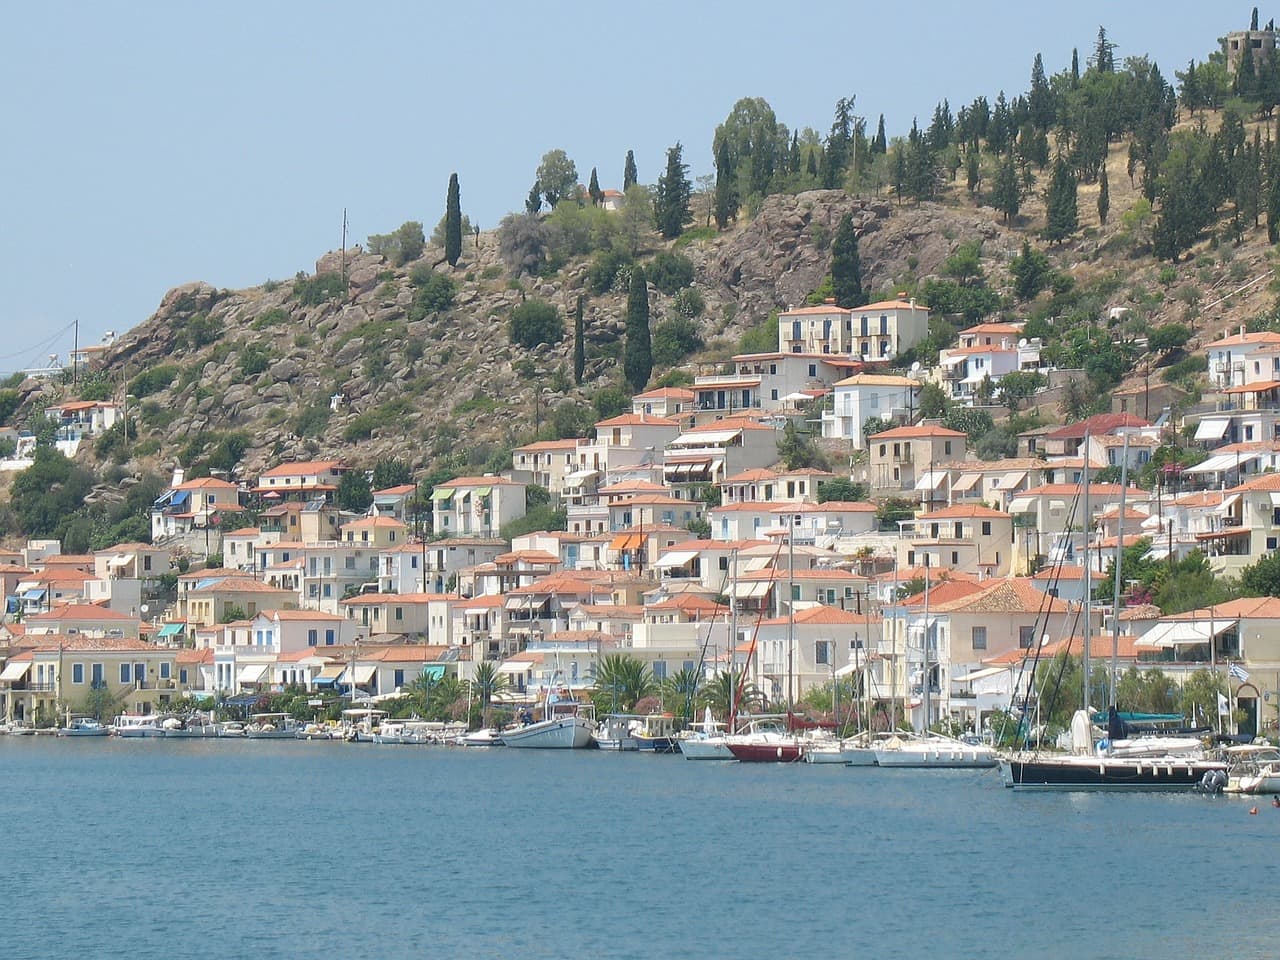 Uma das melhores maneiras de percorrer as ilhas gregas é definitivamente de barco, o que traz liberdade ao passeio e escolha de quais ilhas parar, evitando os ferry boats lotados e demorados